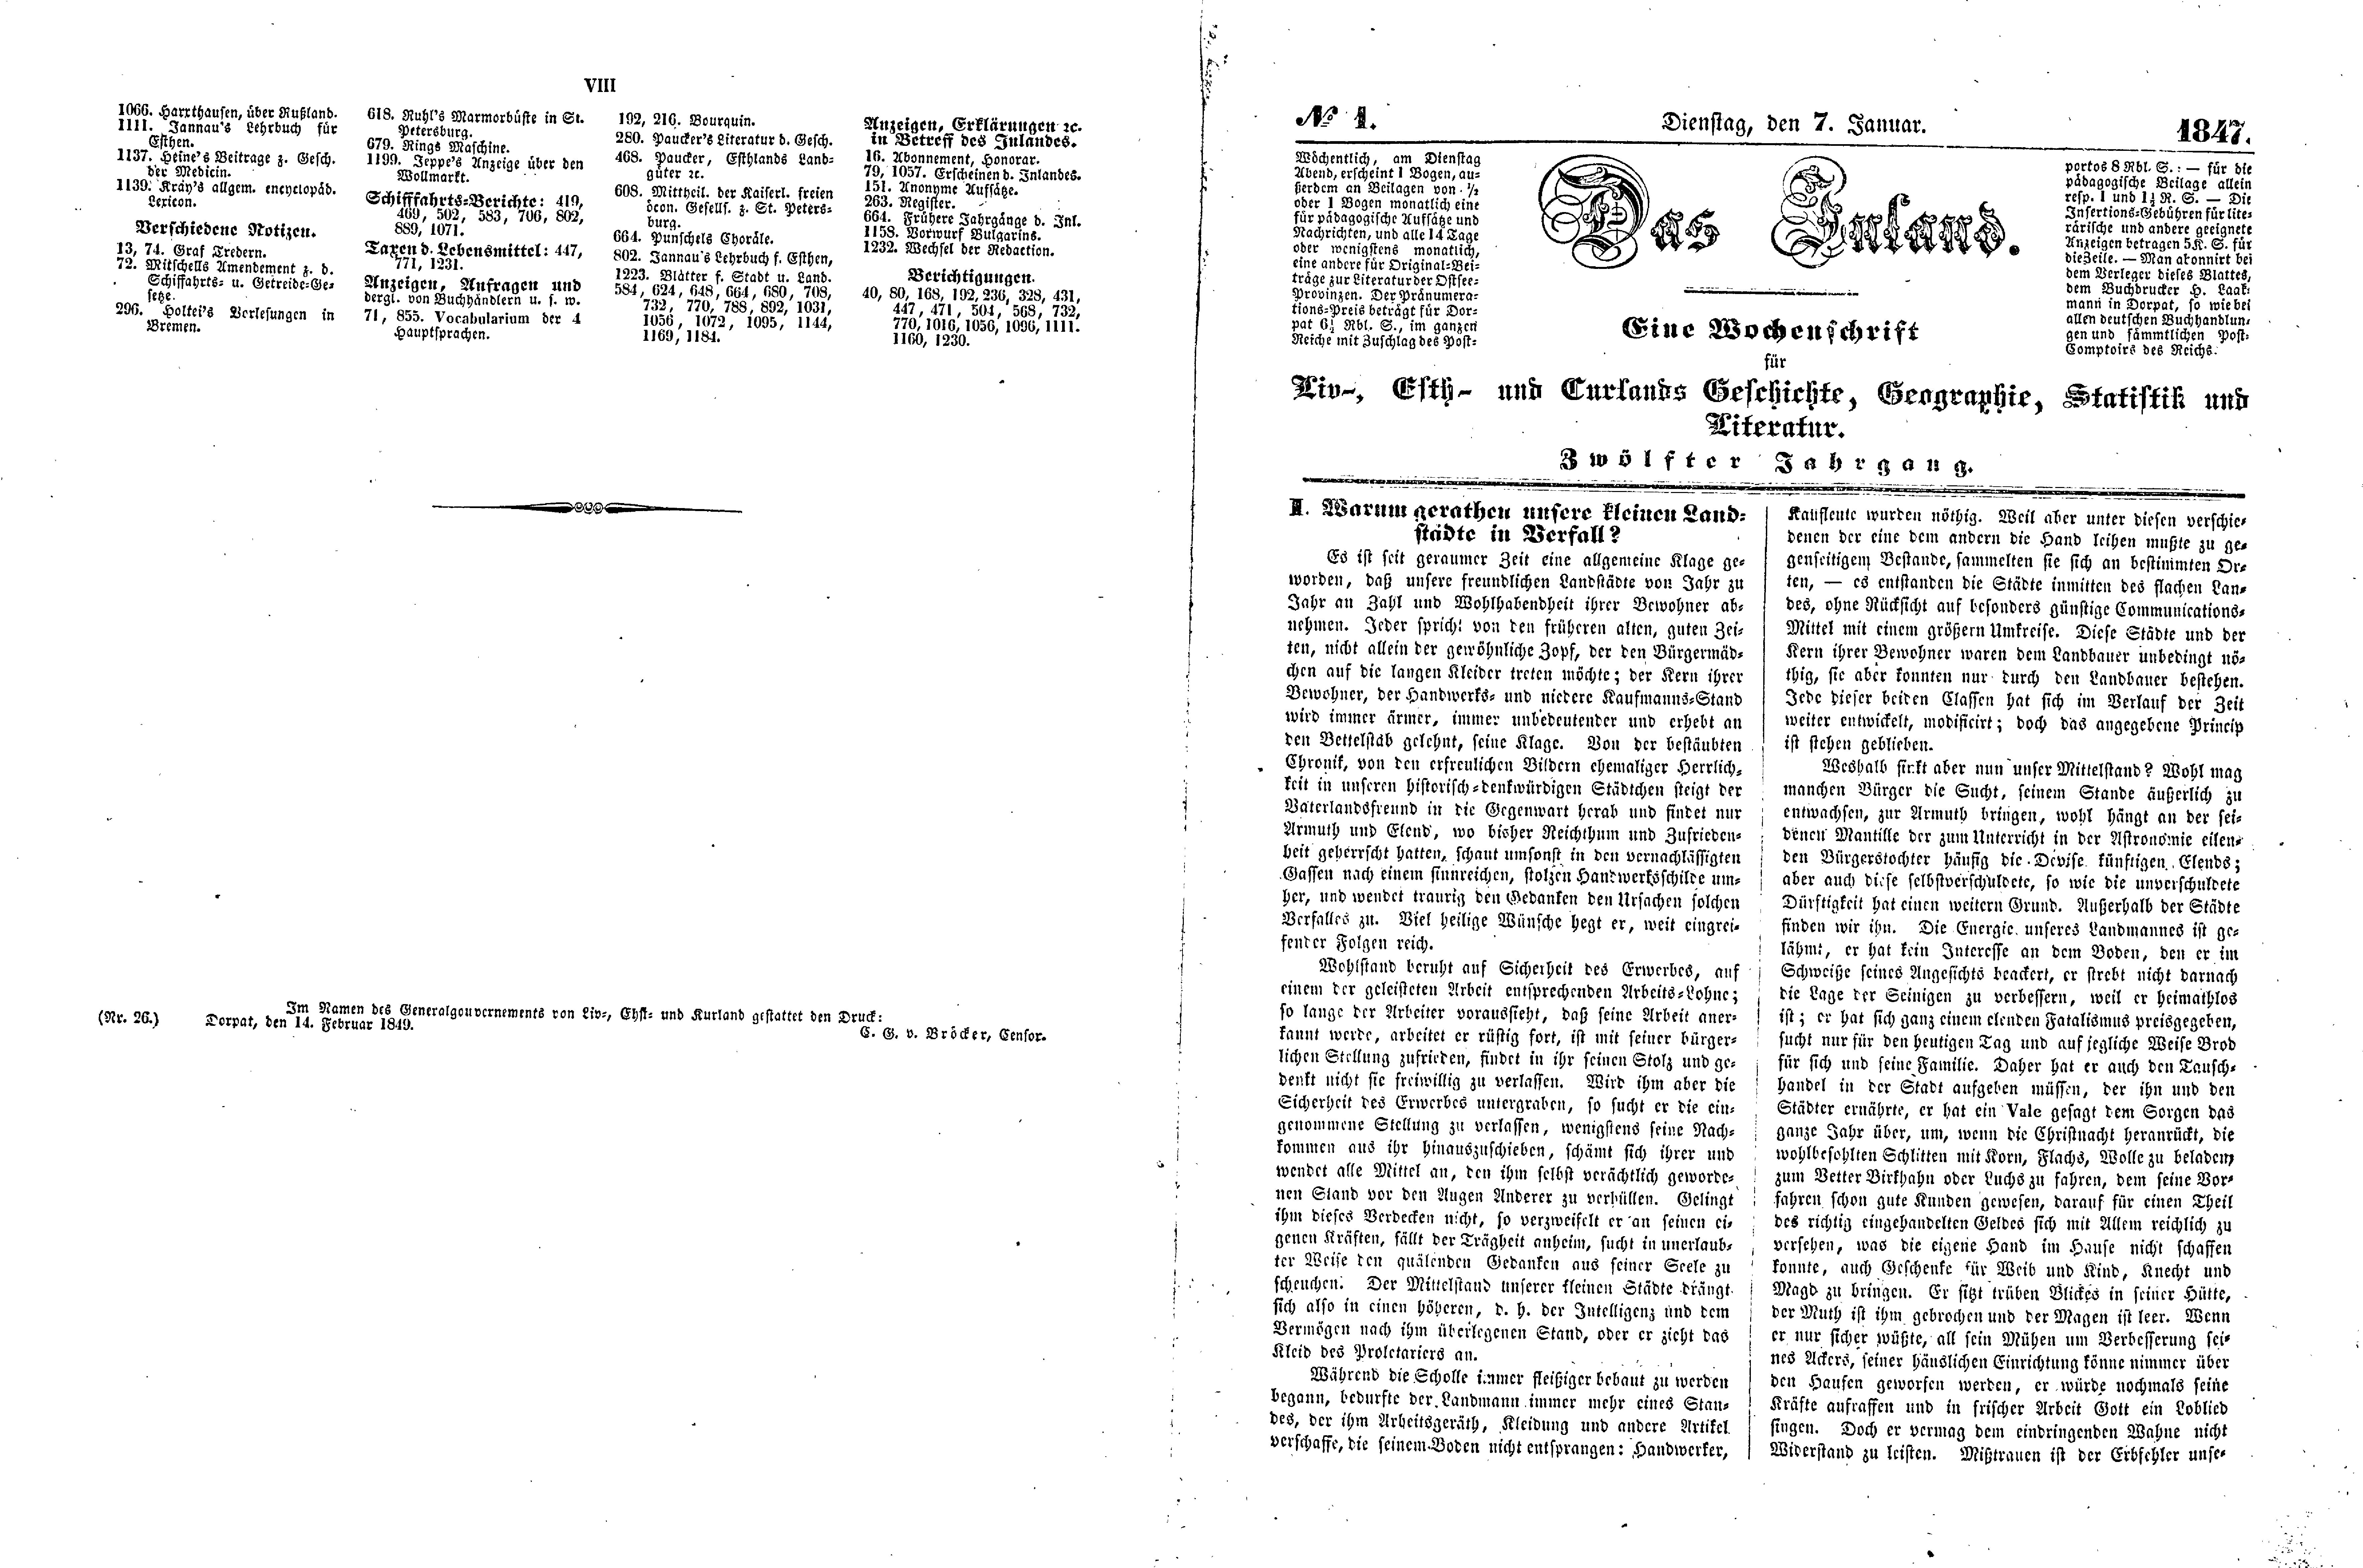 Das Inland [12] (1847) | 5. (VII-1) Index, Main body of text